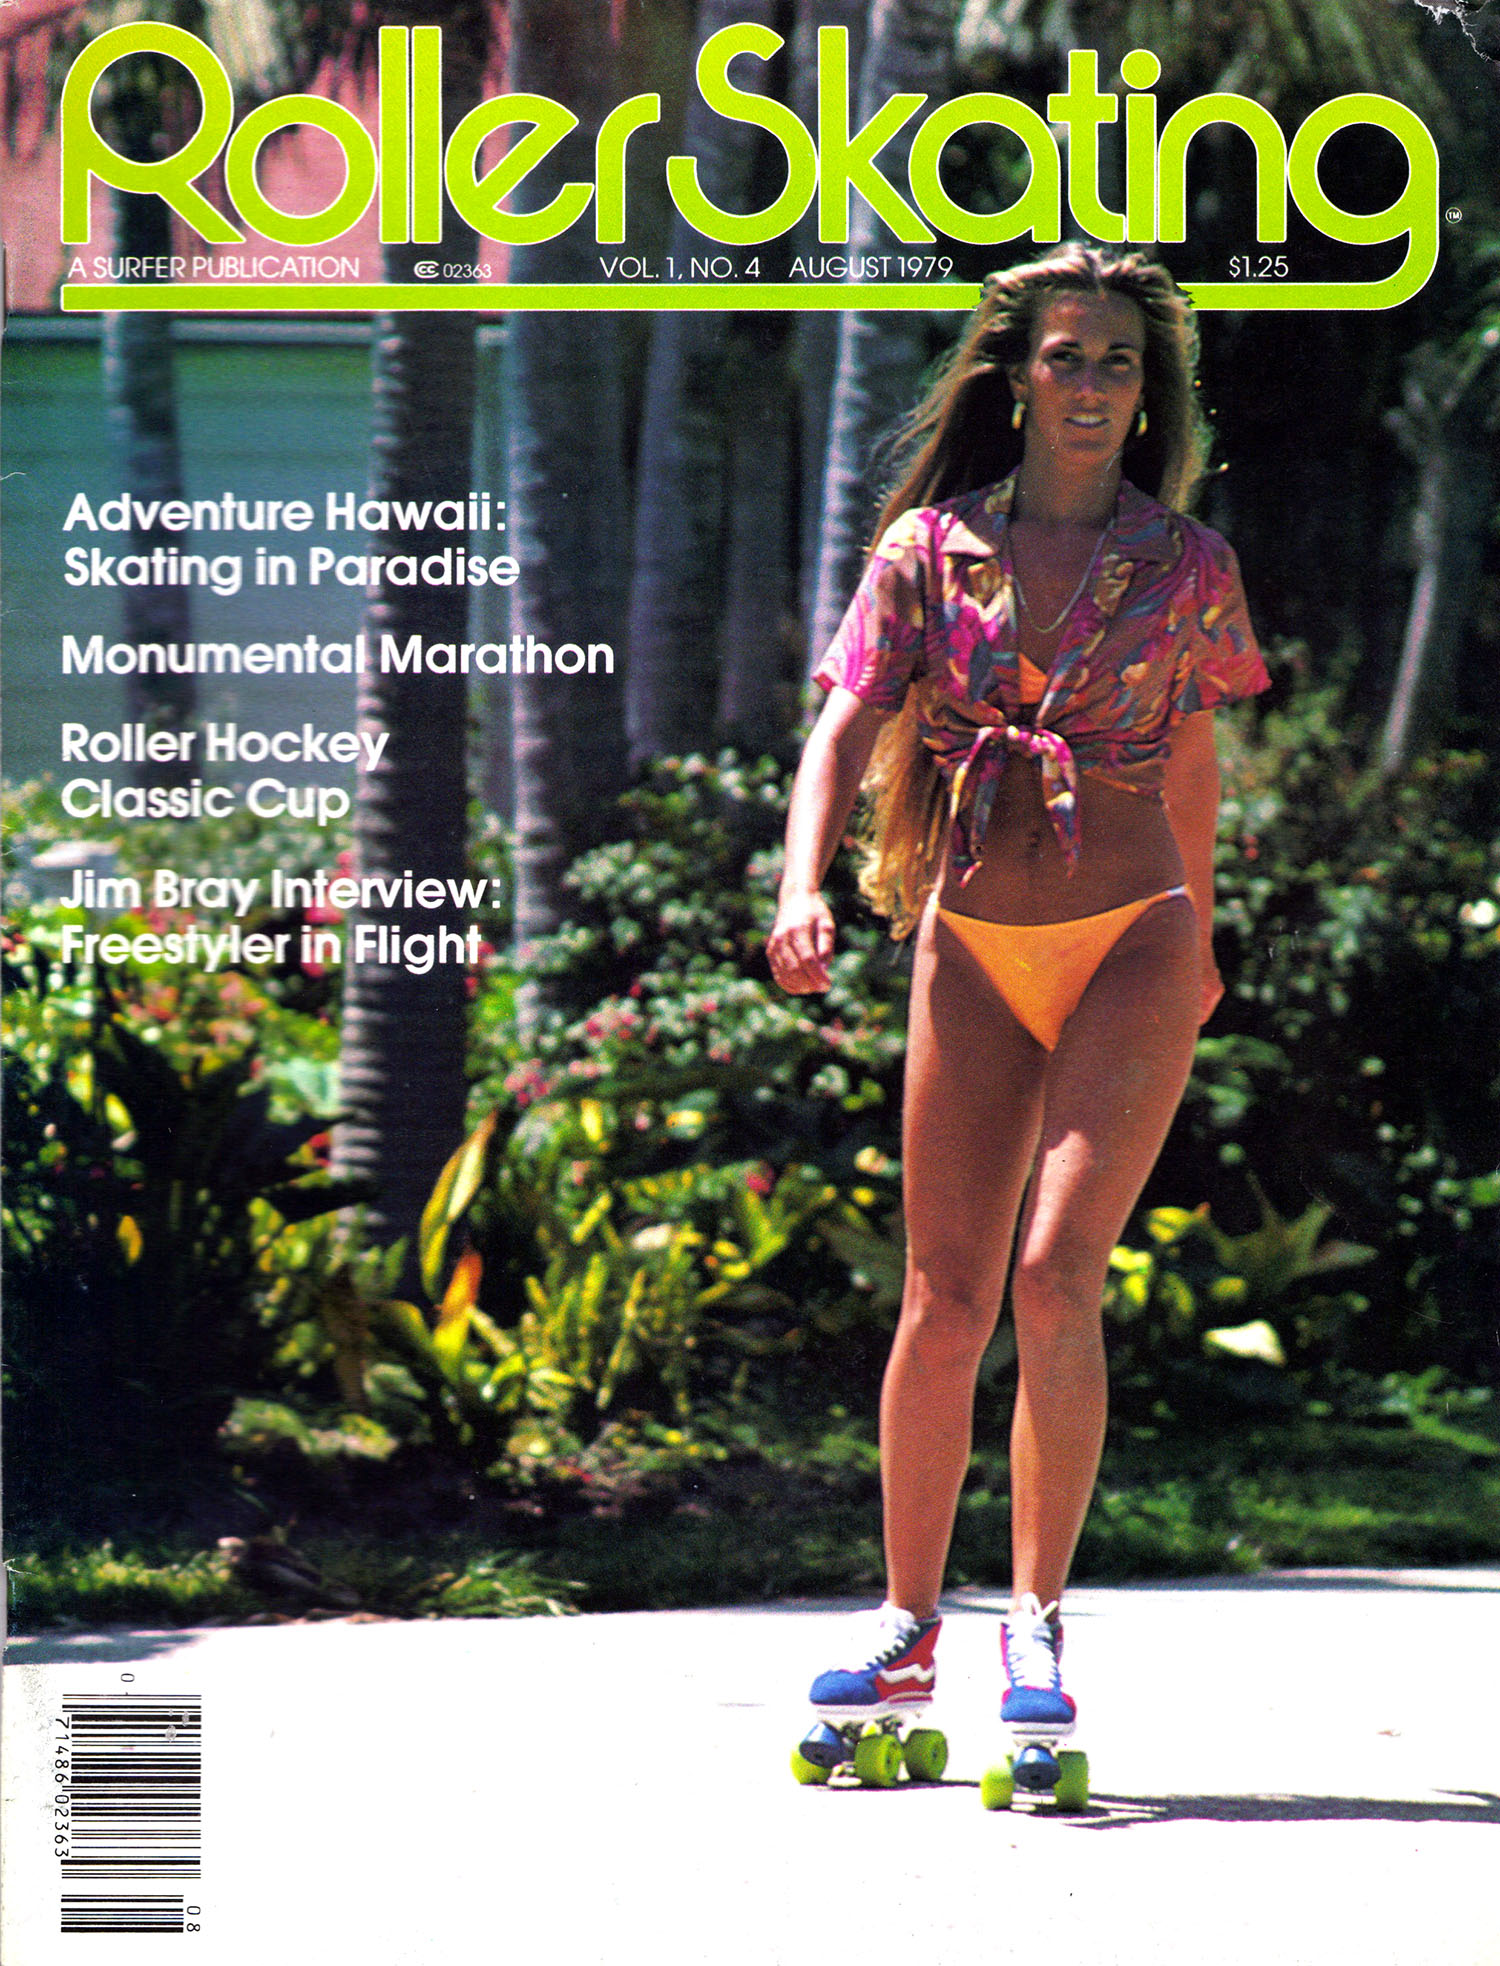 roller skating magazine cover (3)